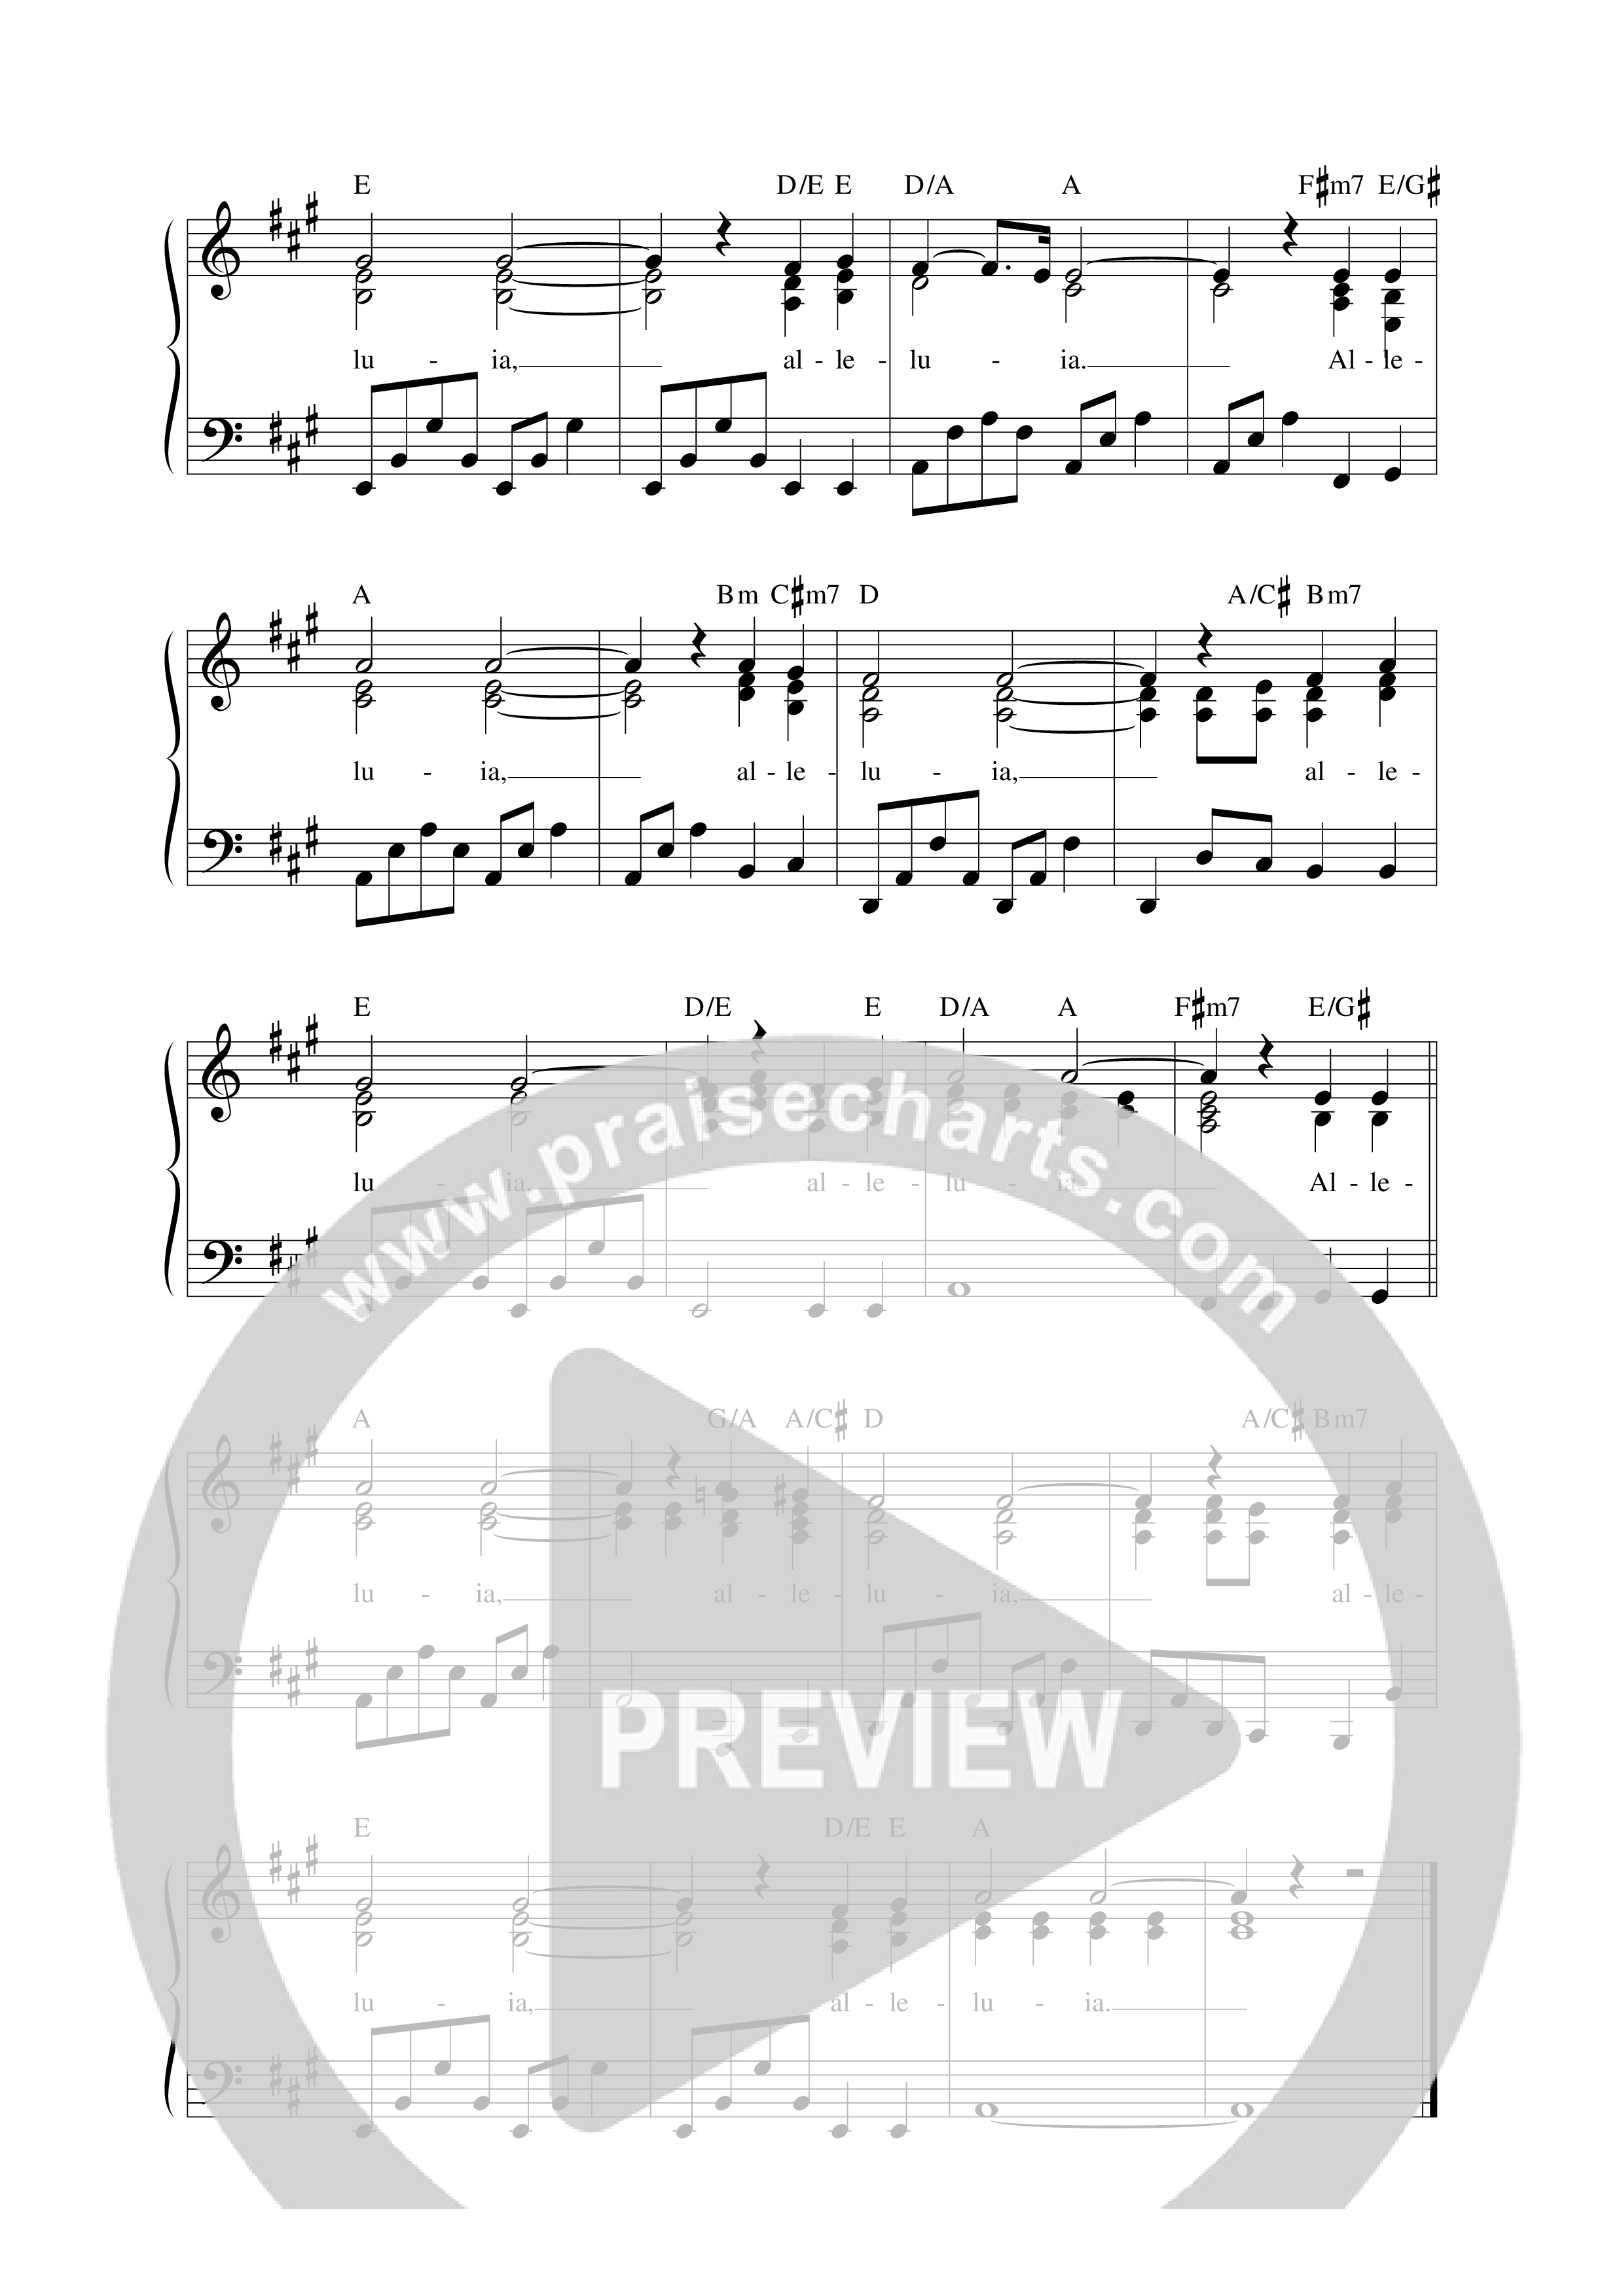 Alleluia (REVERE Unscripted) Lead Sheet Melody (REVERE / Joseph Espinoza)